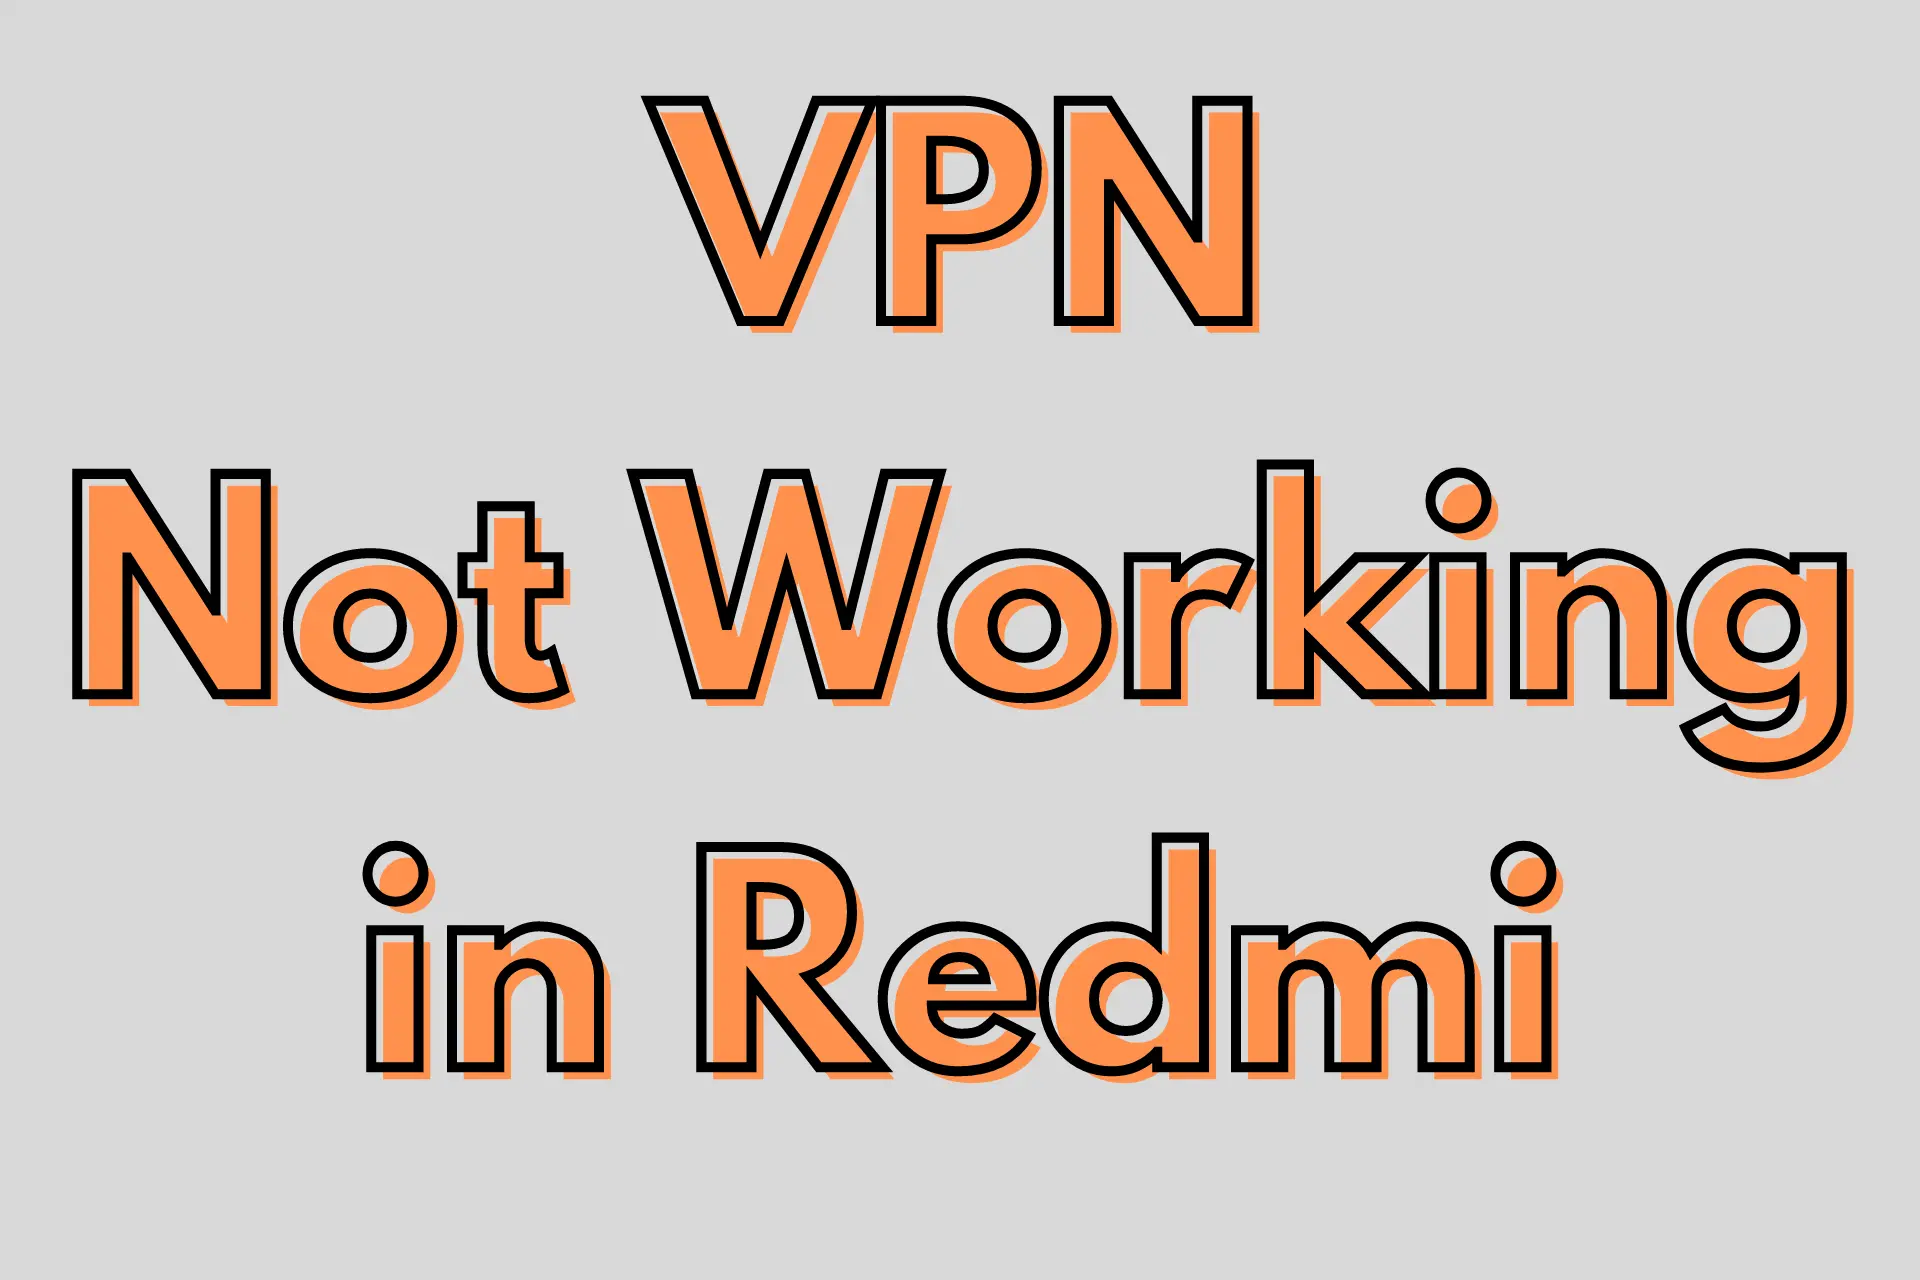 VPN not working in Redmi